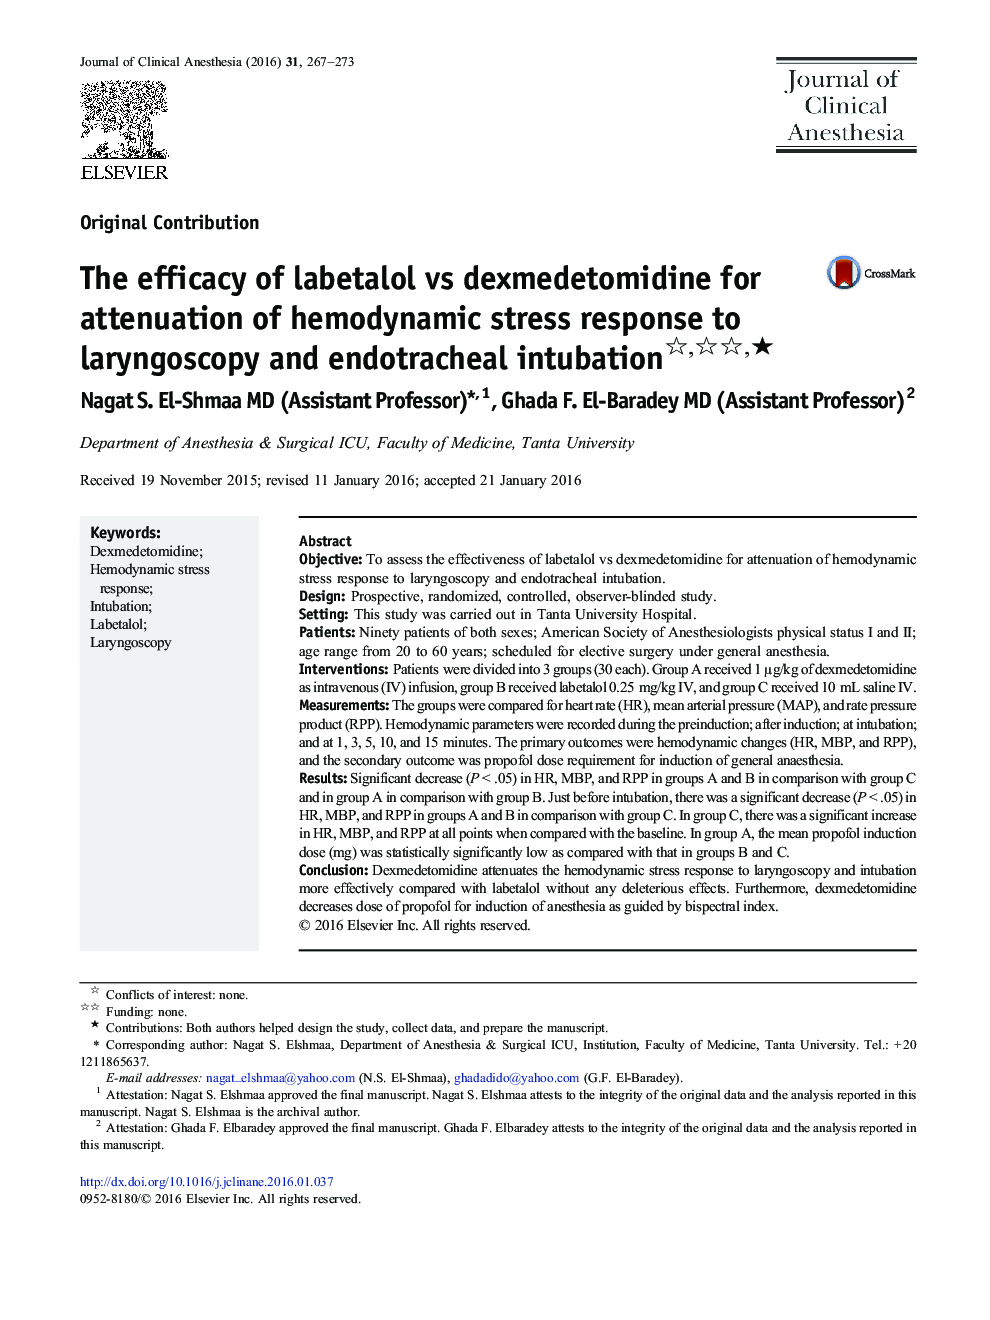 The efficacy of labetalol vs dexmedetomidine for attenuation of hemodynamic stress response to laryngoscopy and endotracheal intubation